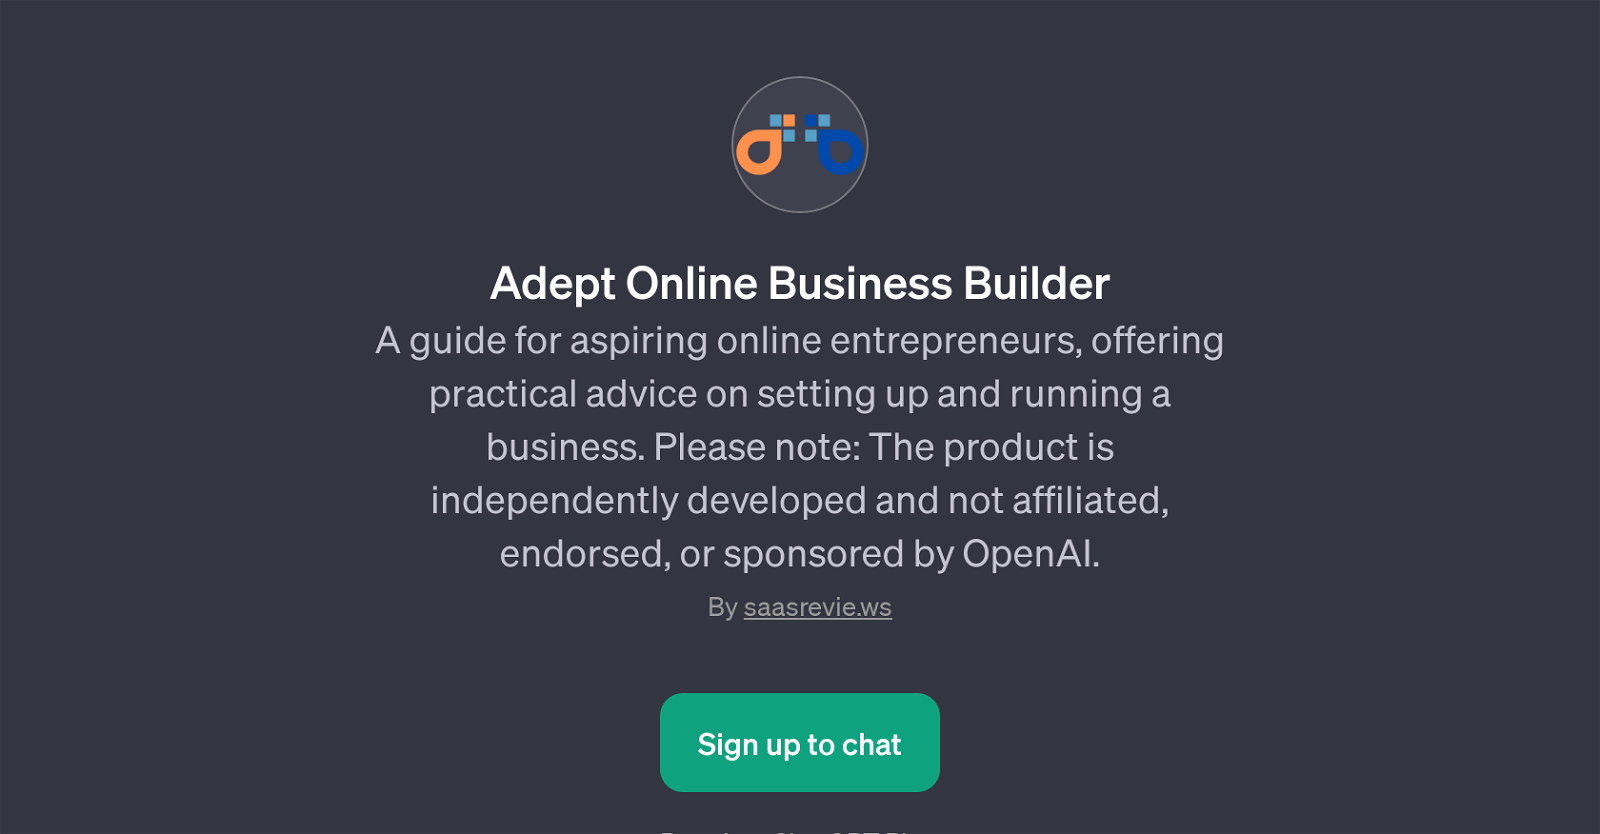 Adept Online Business Builder website